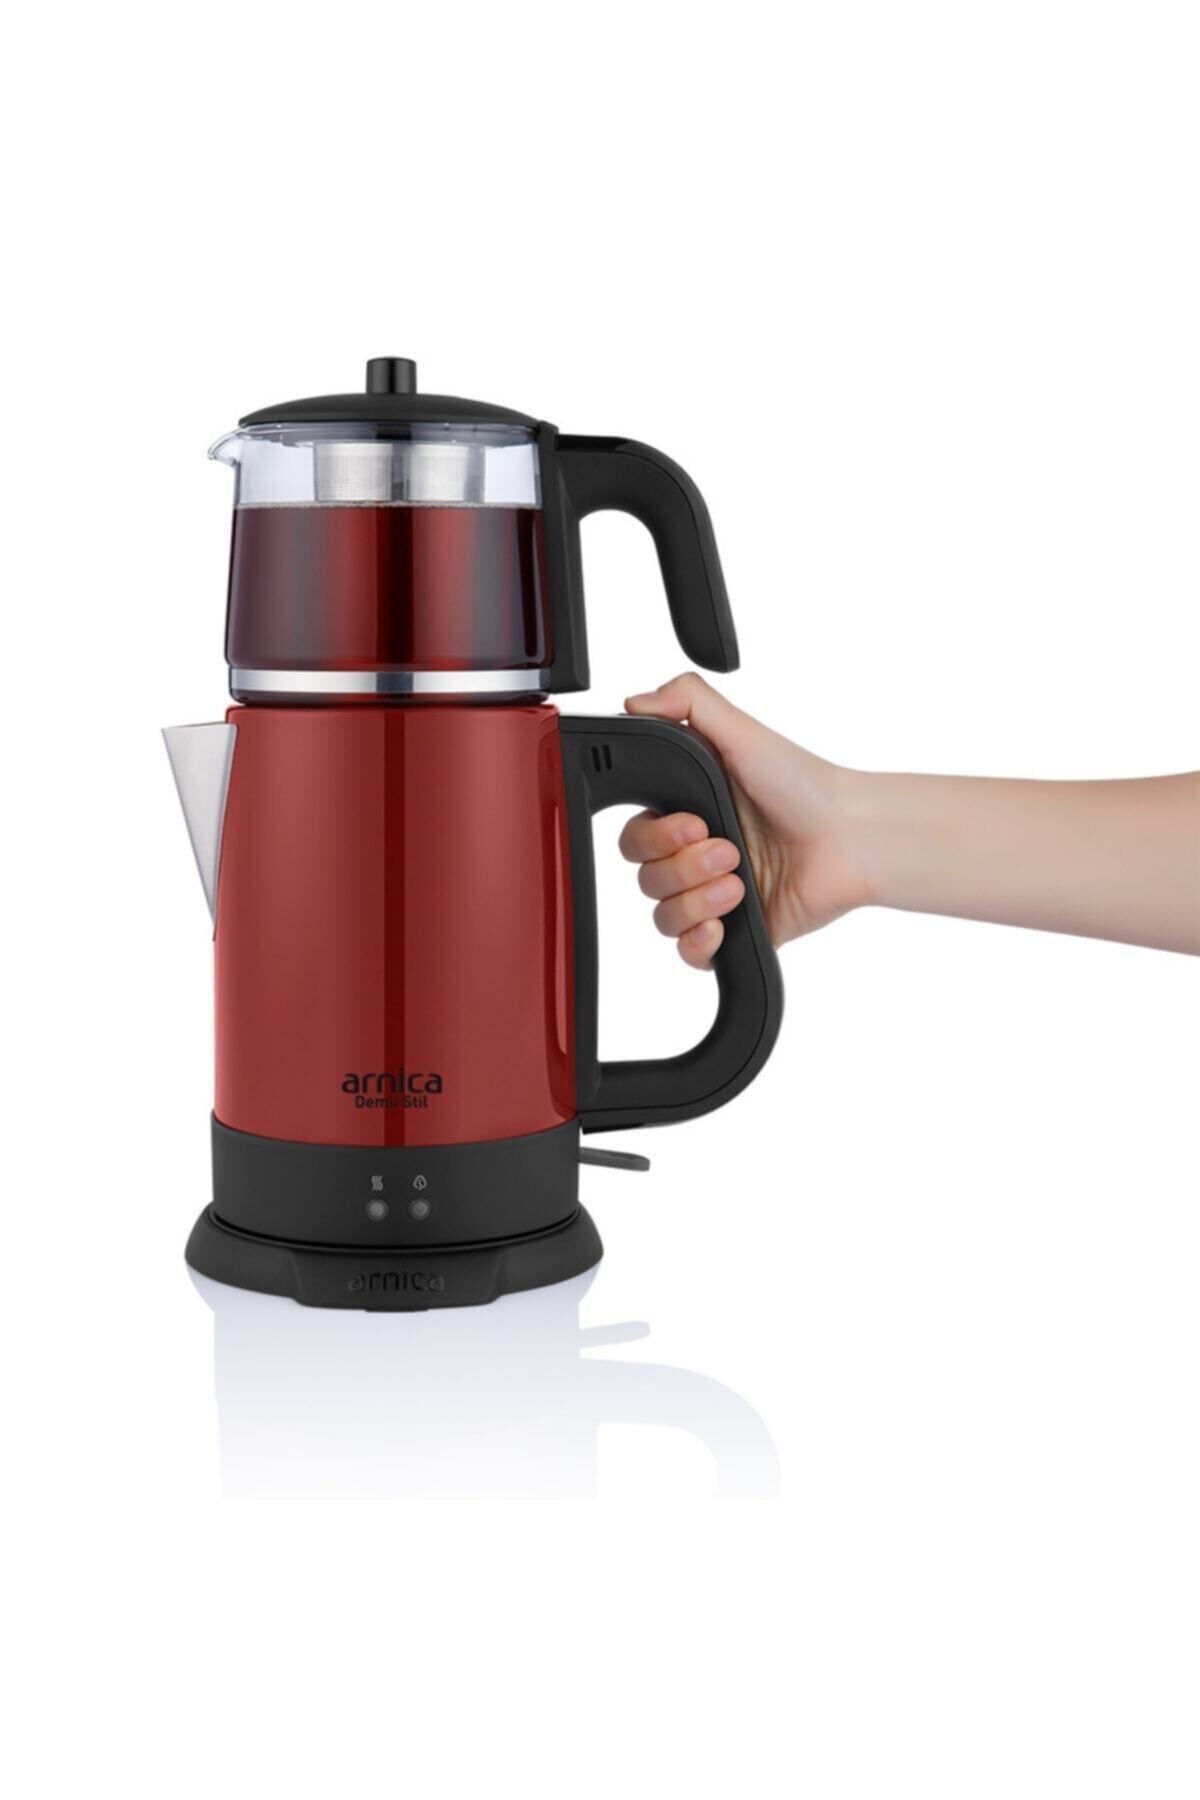 Arnica Demli Stil Kırmızı Cam Çay Makinesi Ih33024